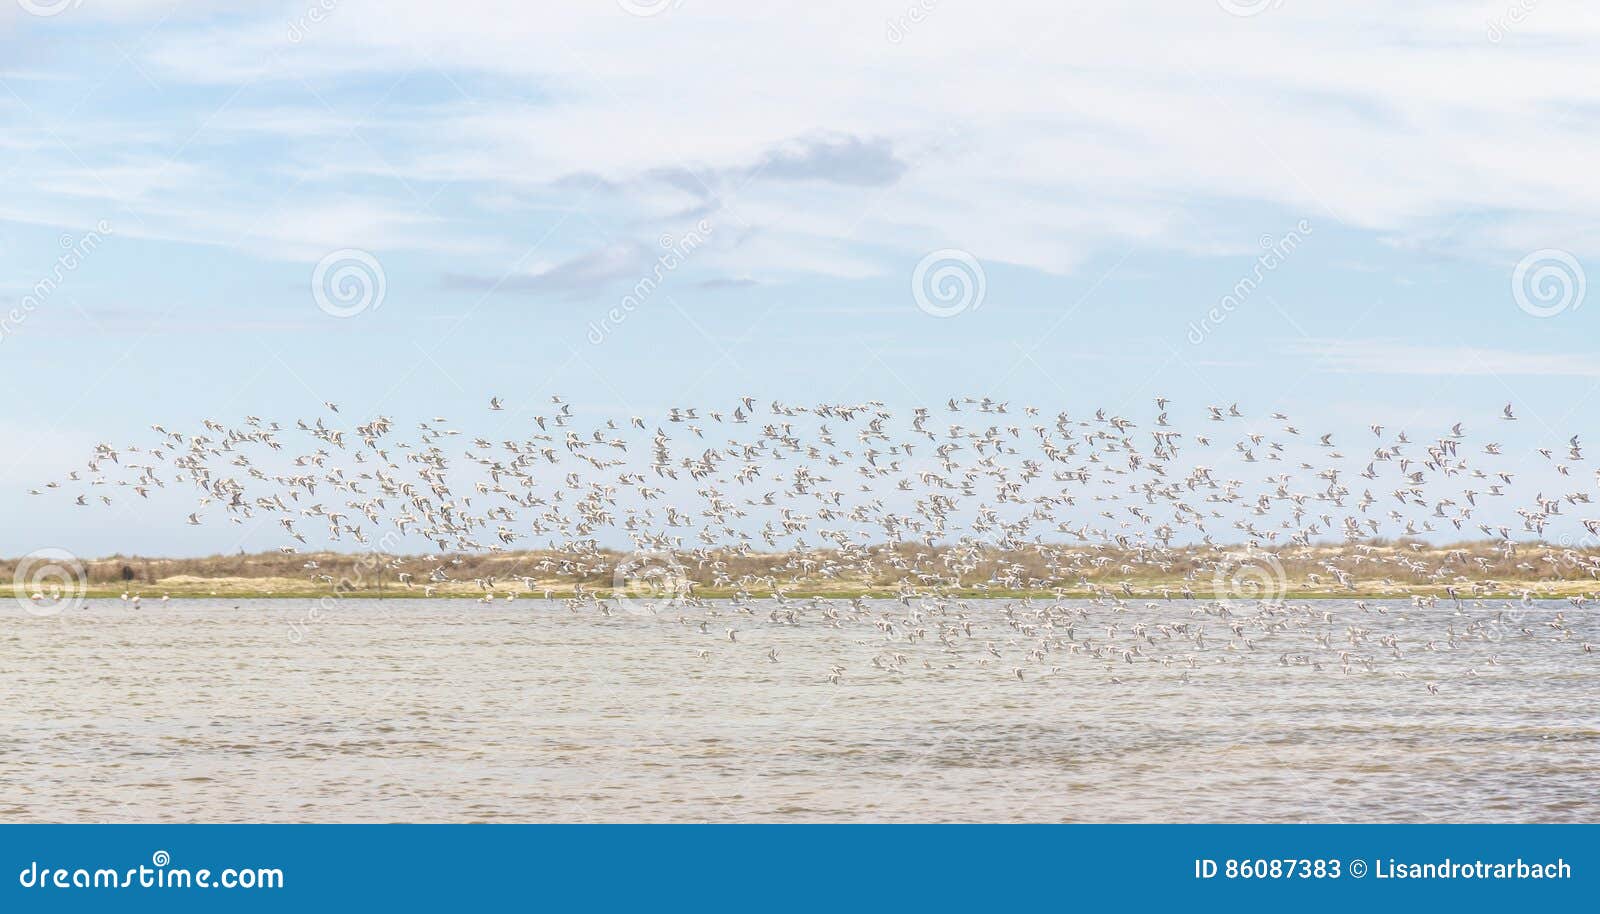 group of sanderlings at lagoa do peixe